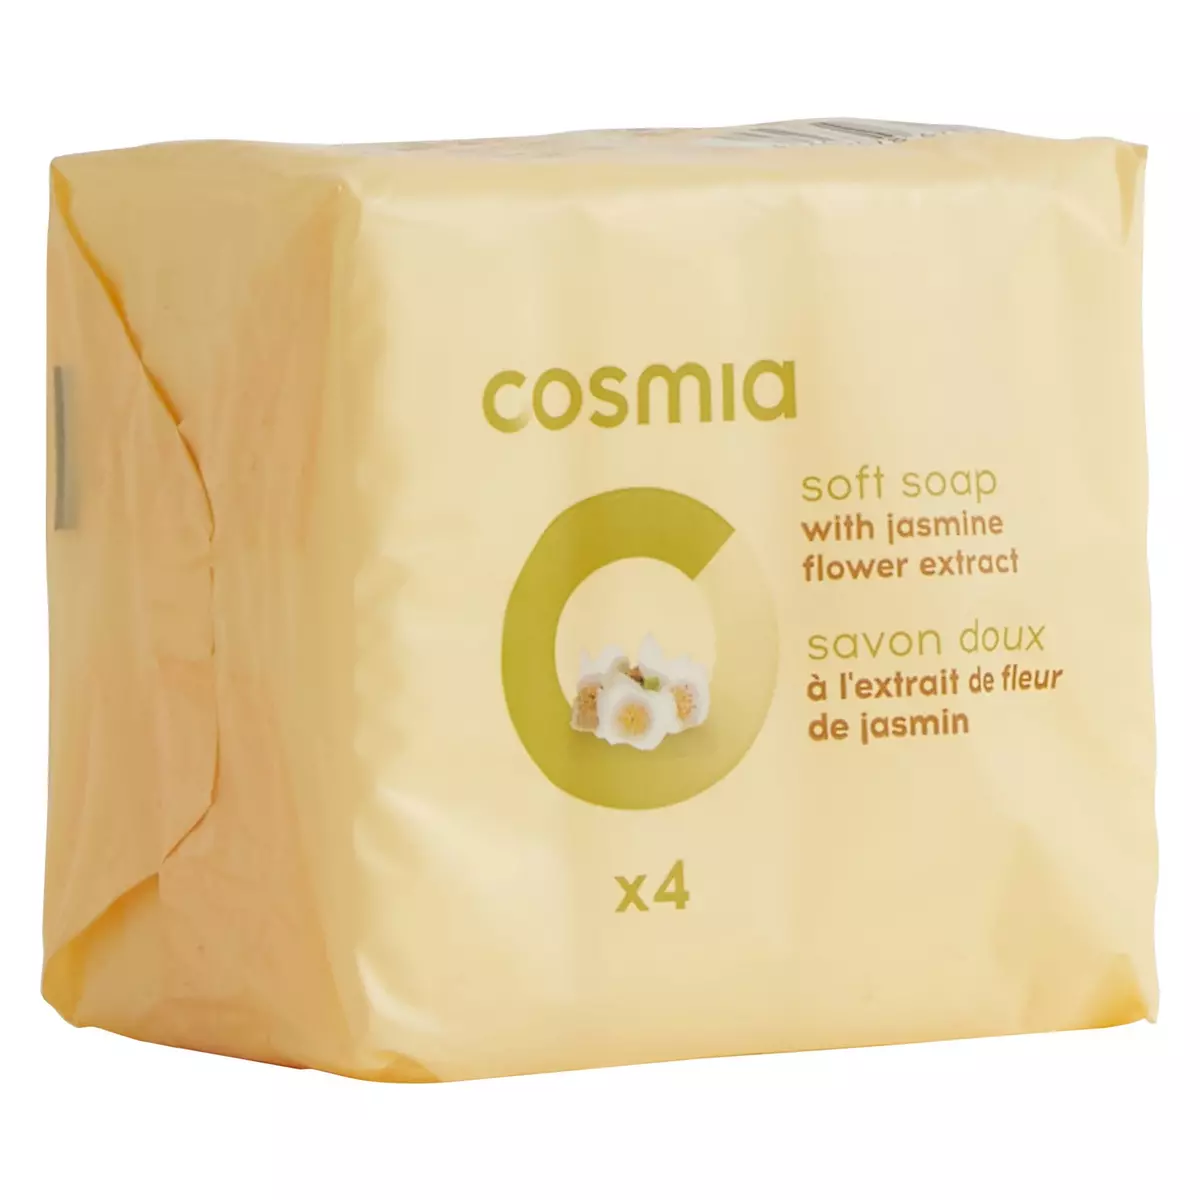 COSMIA Savons doux à l'extrait de fleur de jasmin 4 savons 4x90g